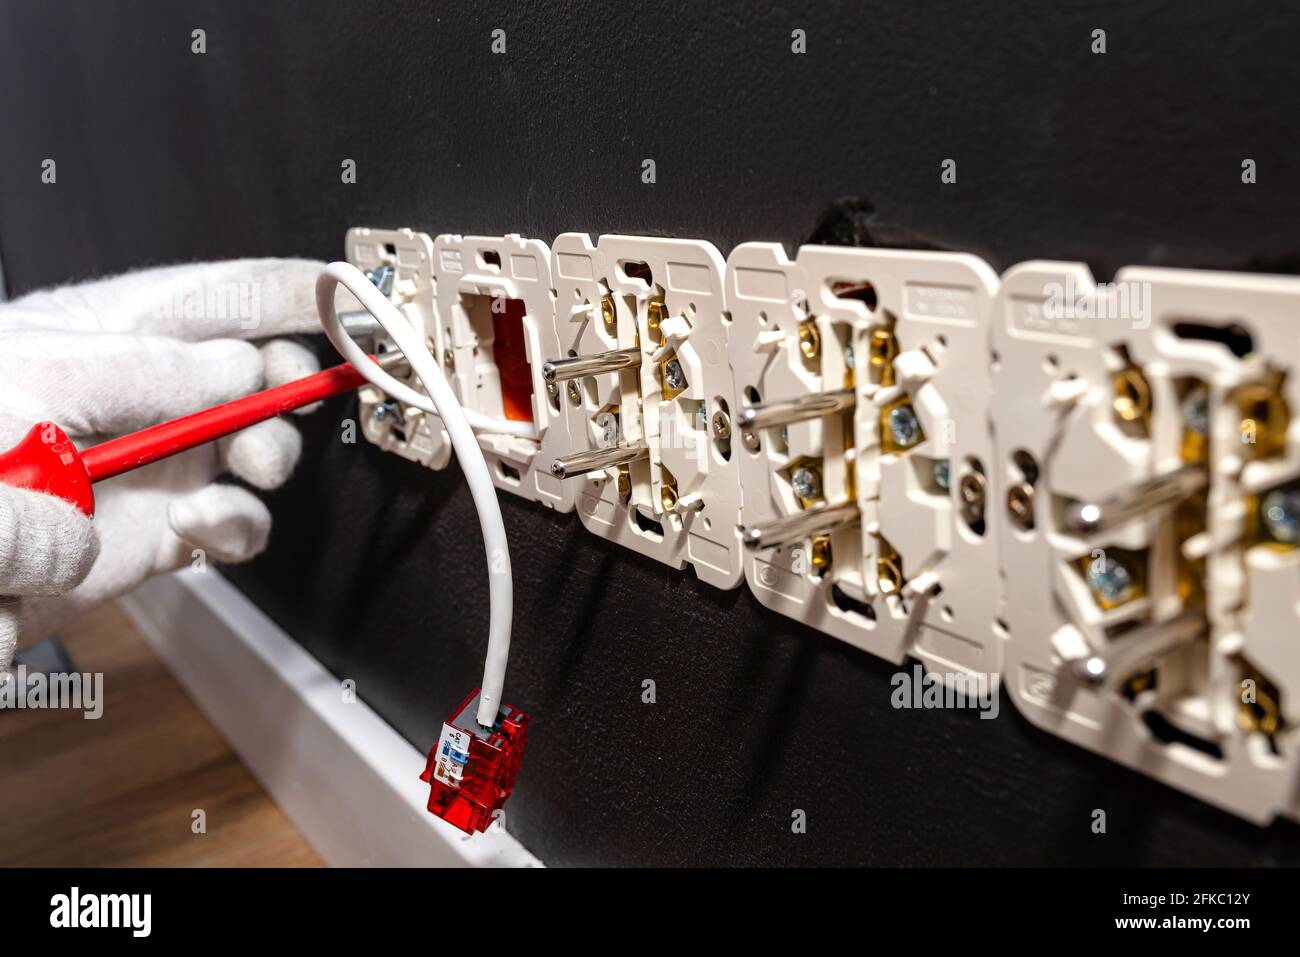 Un câble réseau dépassant du mur avec un module RJ45 prêt à l'emploi vers la prise de l'ordinateur dans la salle, prises électriques visibles. Banque D'Images